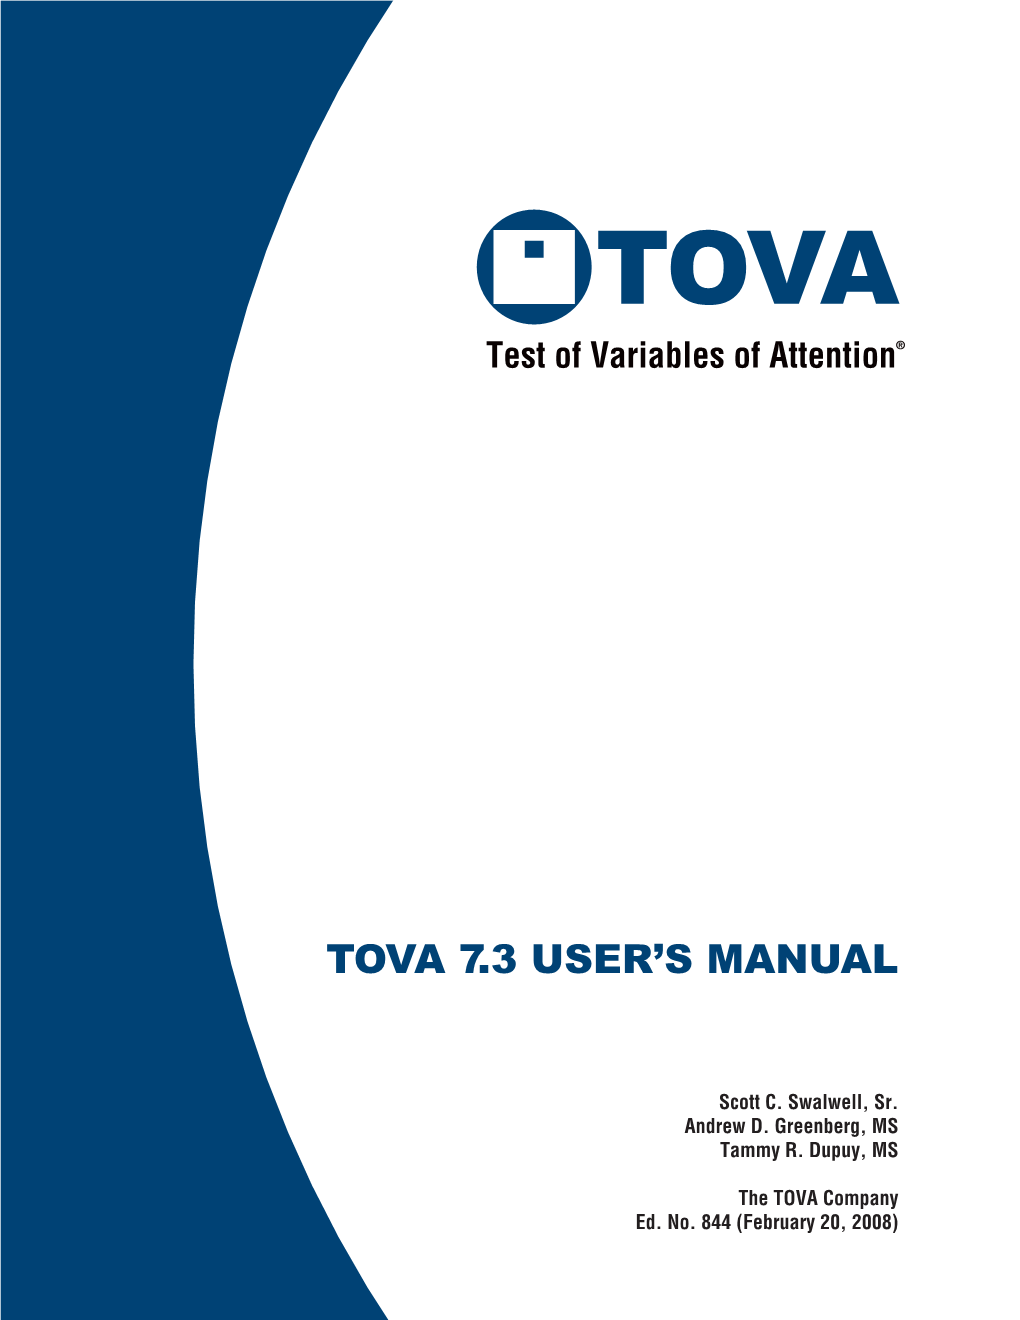 TOVA 7.3 User's Manual